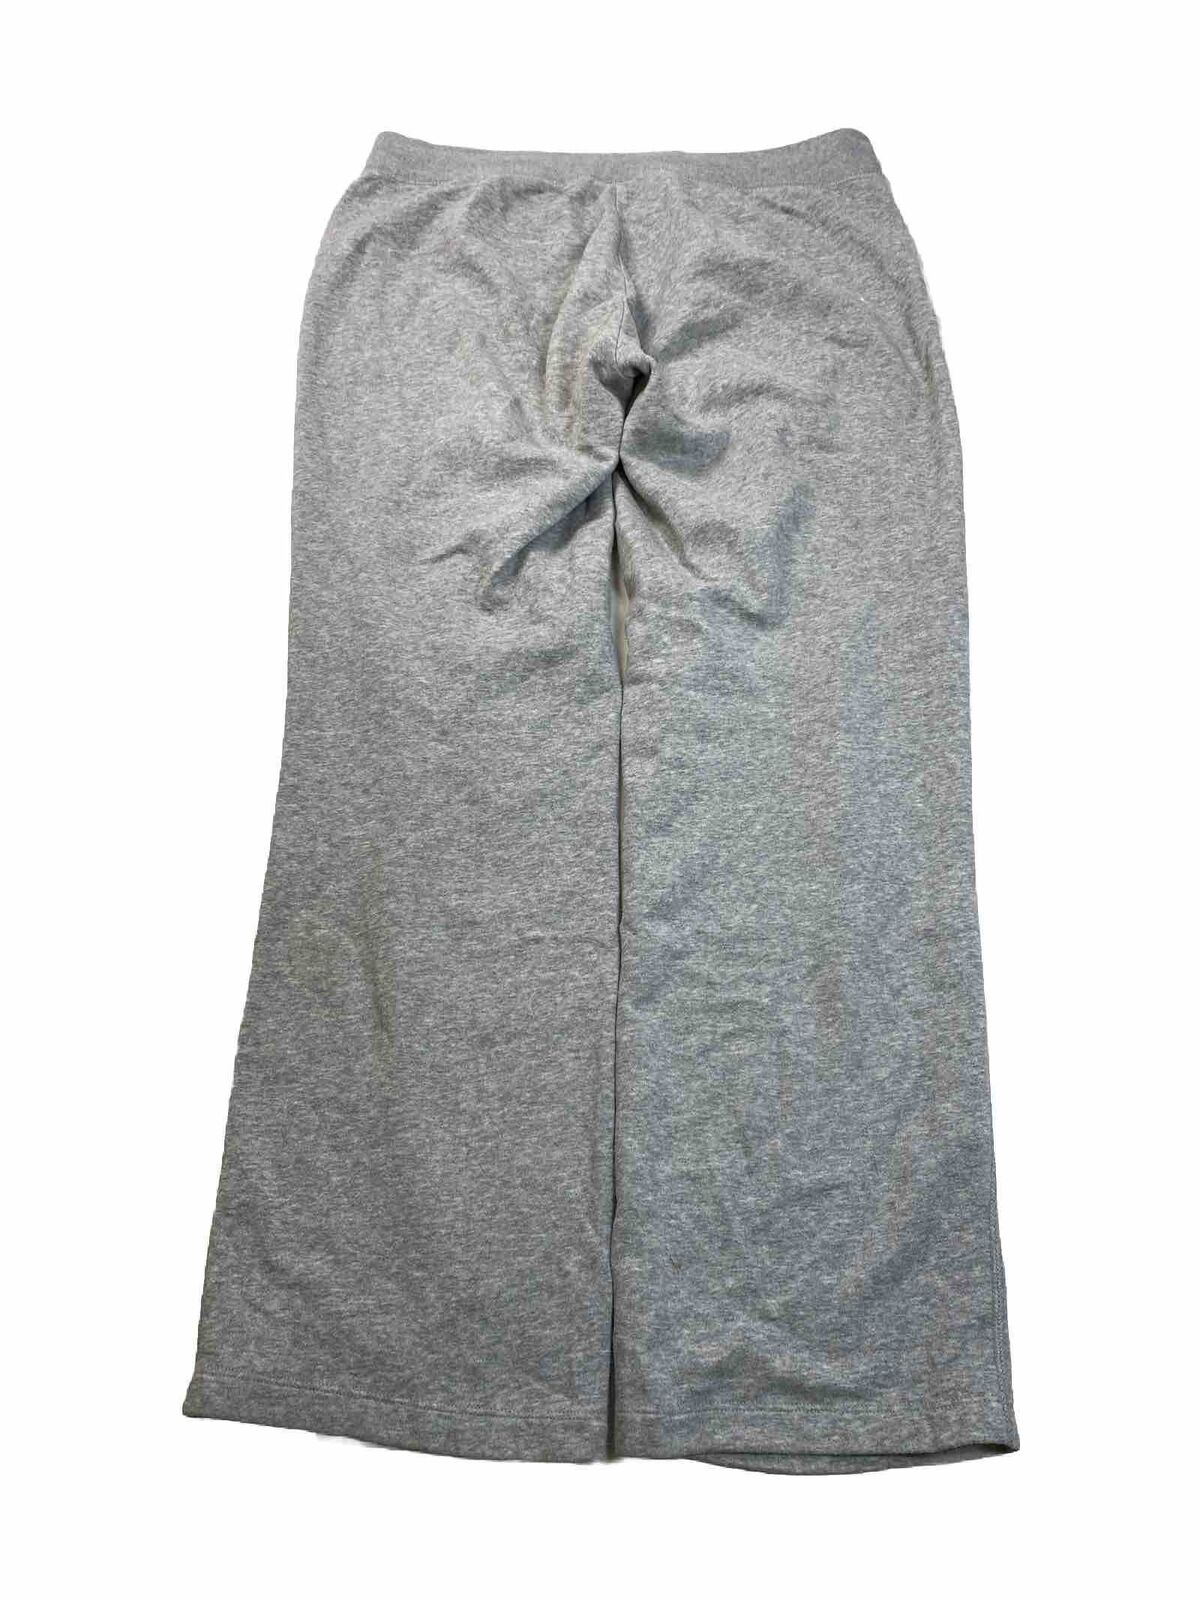 Nike Men's Gray Sportswear Club Fleece Sweatpants - L